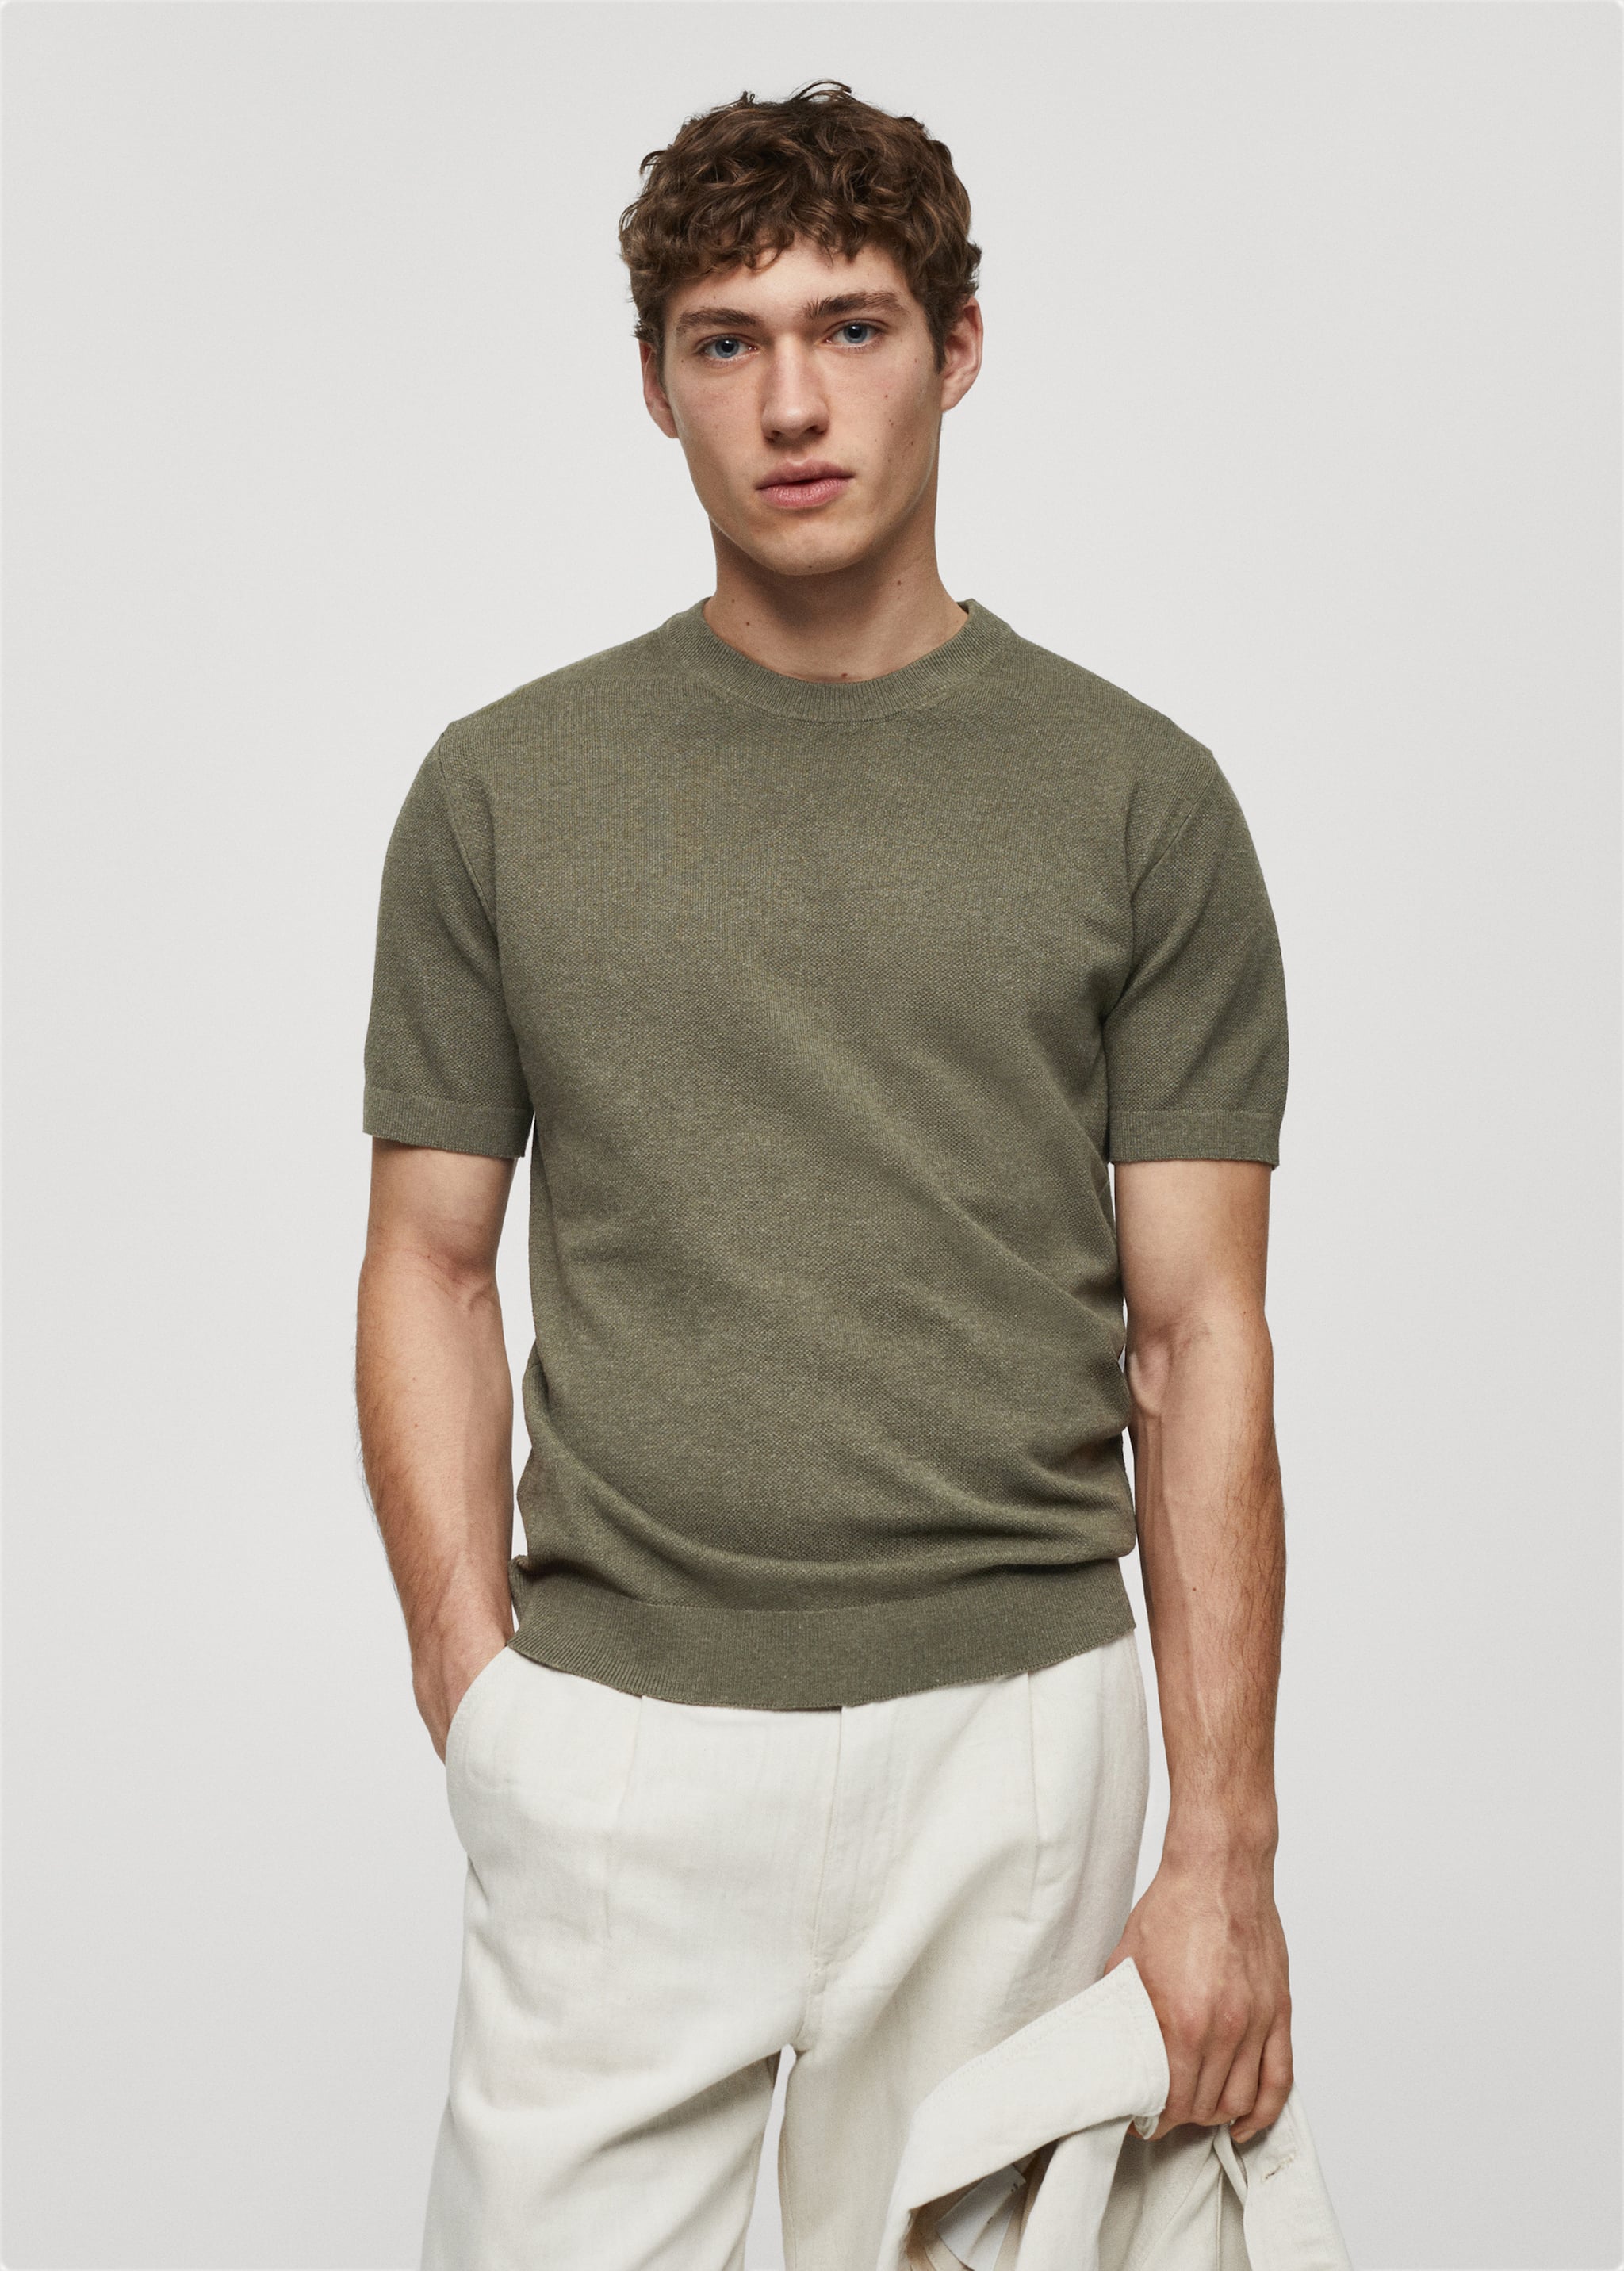 T-shirt maille coton structuré - Plan moyen